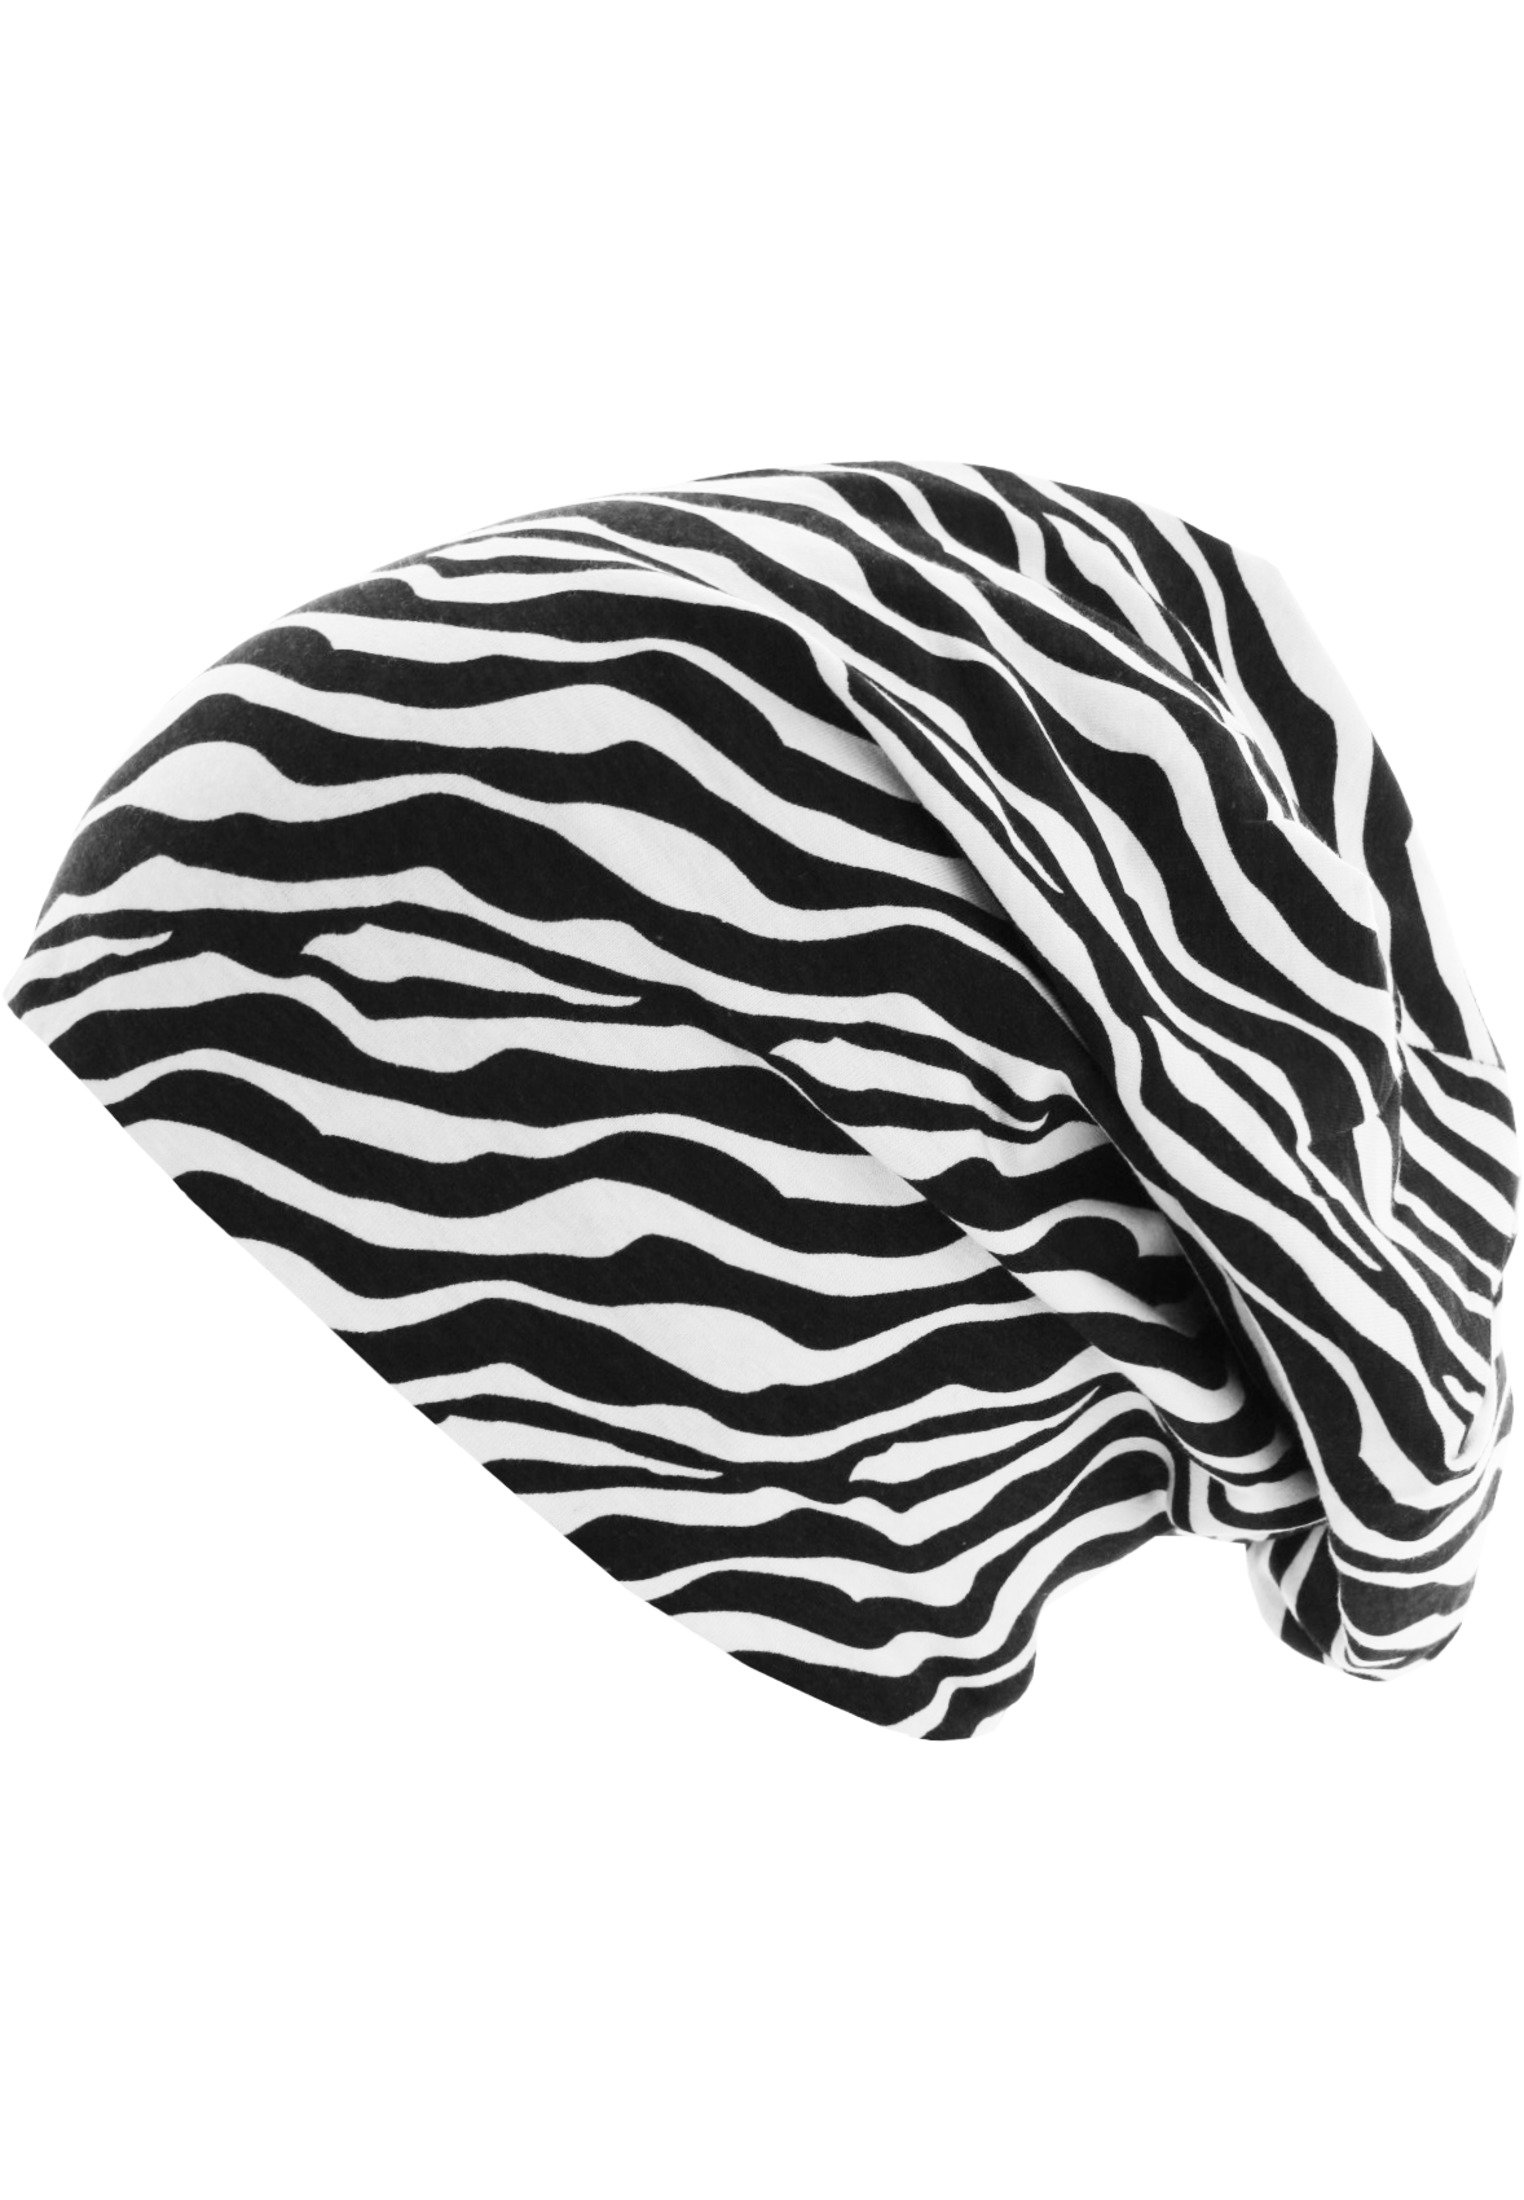 Printed Jersey Beanie Zebra/black one size